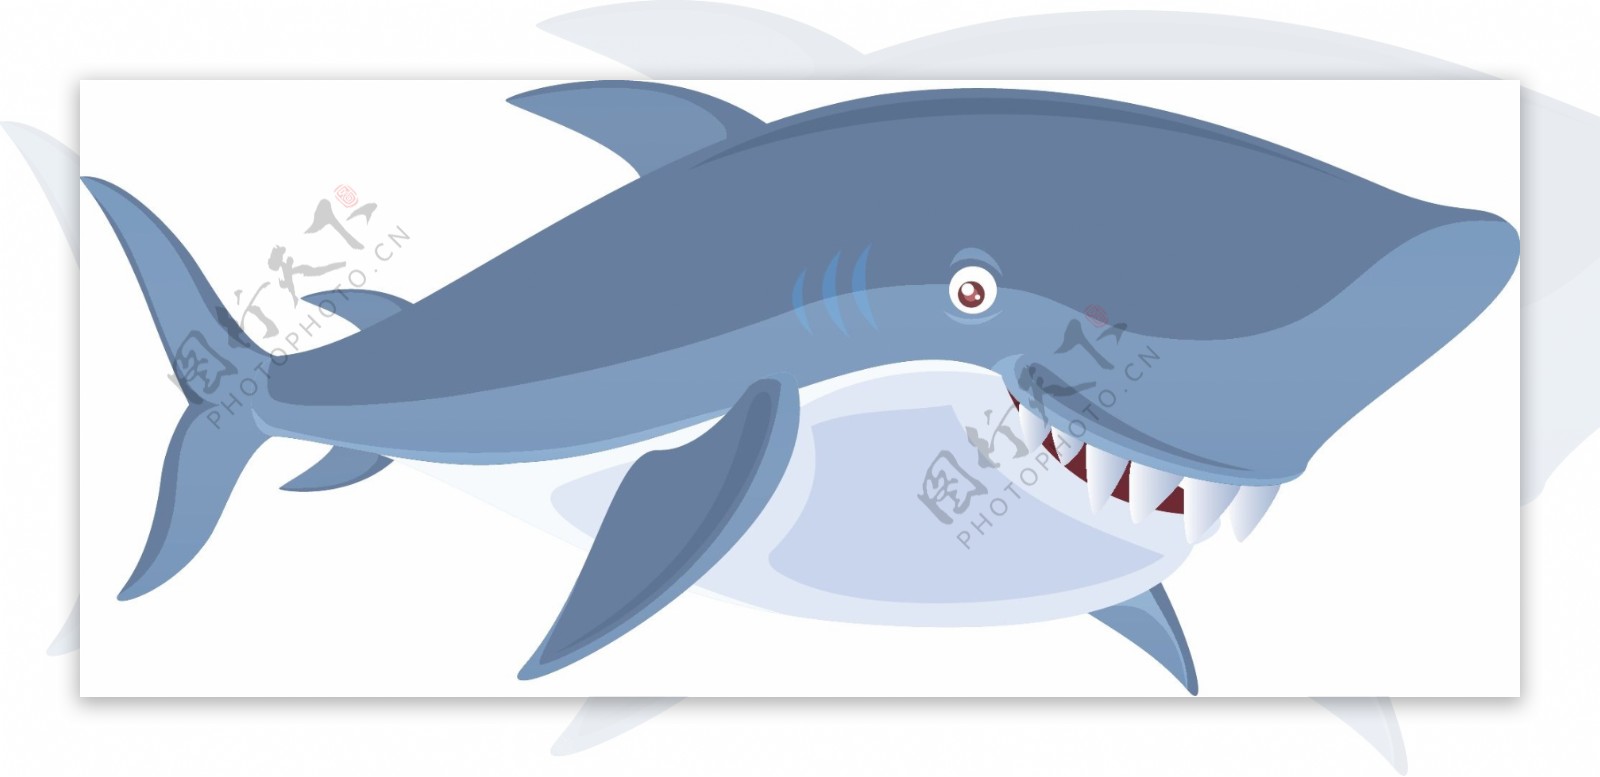 蓝色卡通矢量动物鲨鱼装饰图案设计元素素材